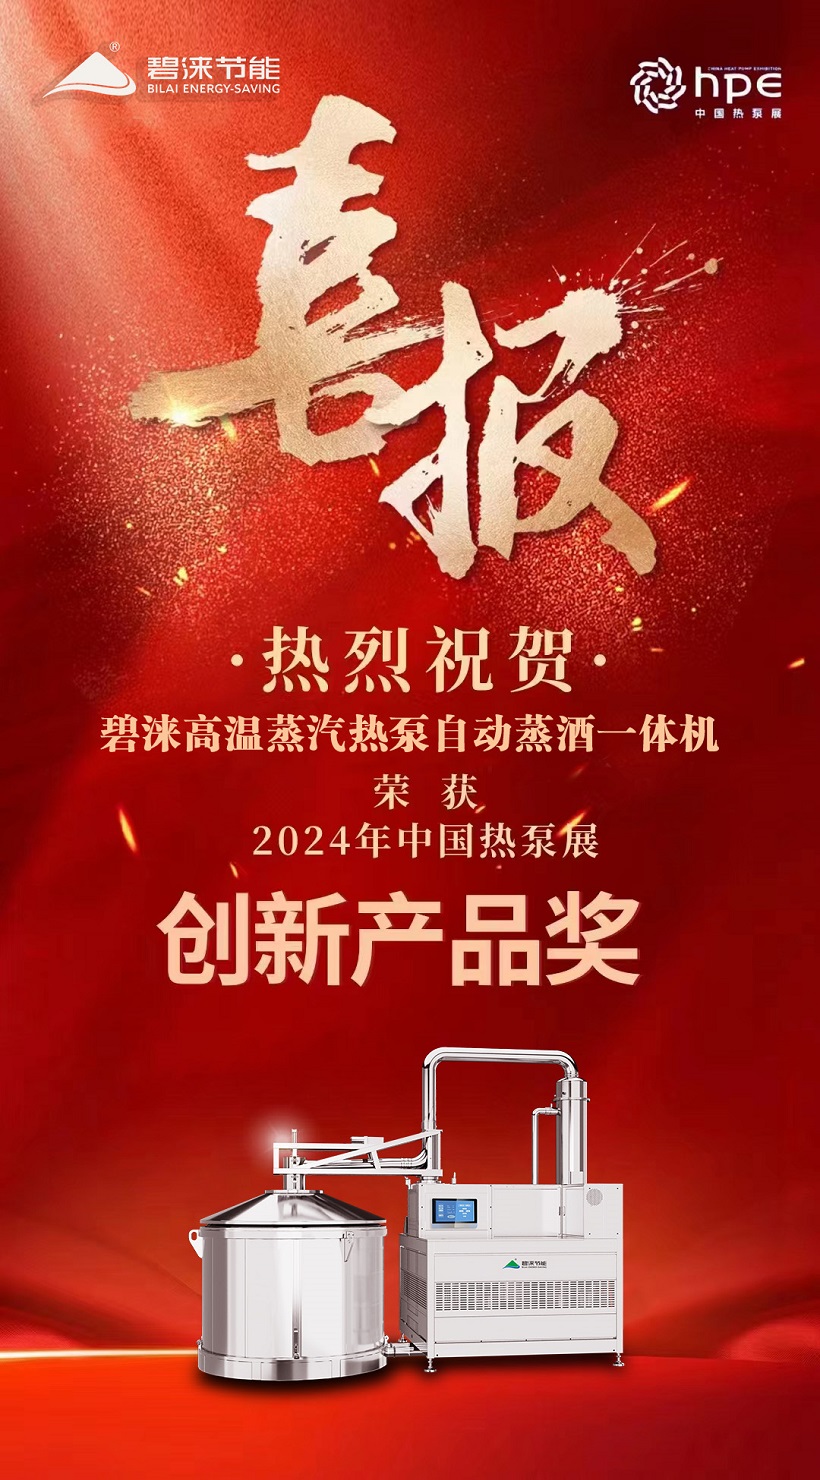 喜报！喜报！祝贺我司高温蒸汽热泵自动蒸酒一体机荣获中国热泵展创新奖！